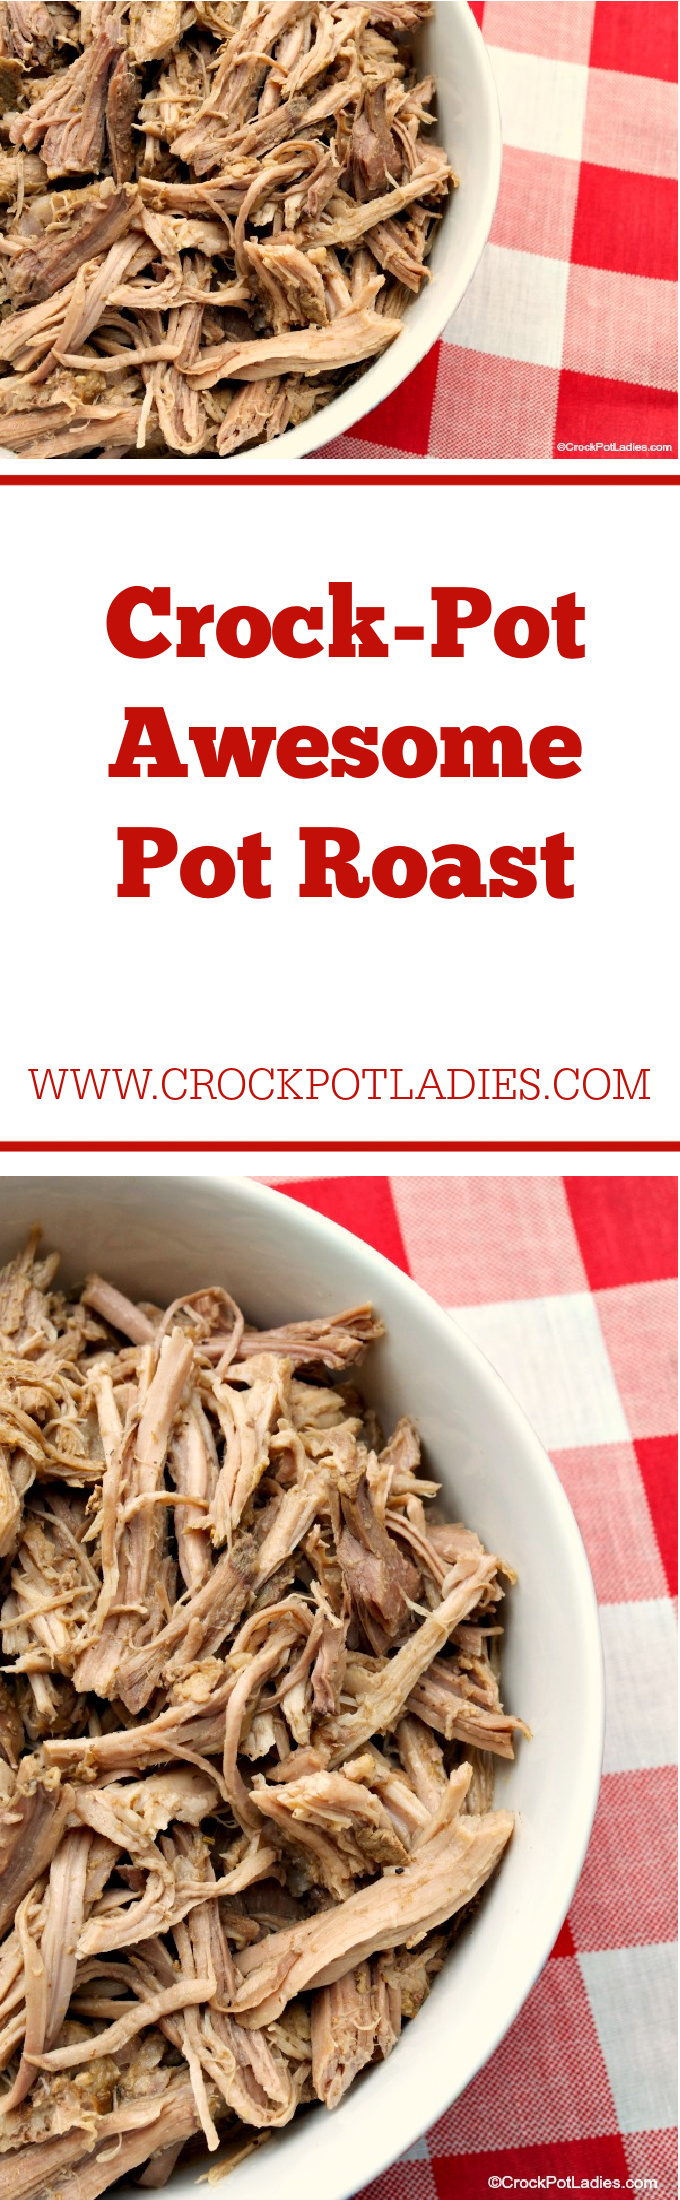 Crock-Pot Awesome Pot Roast